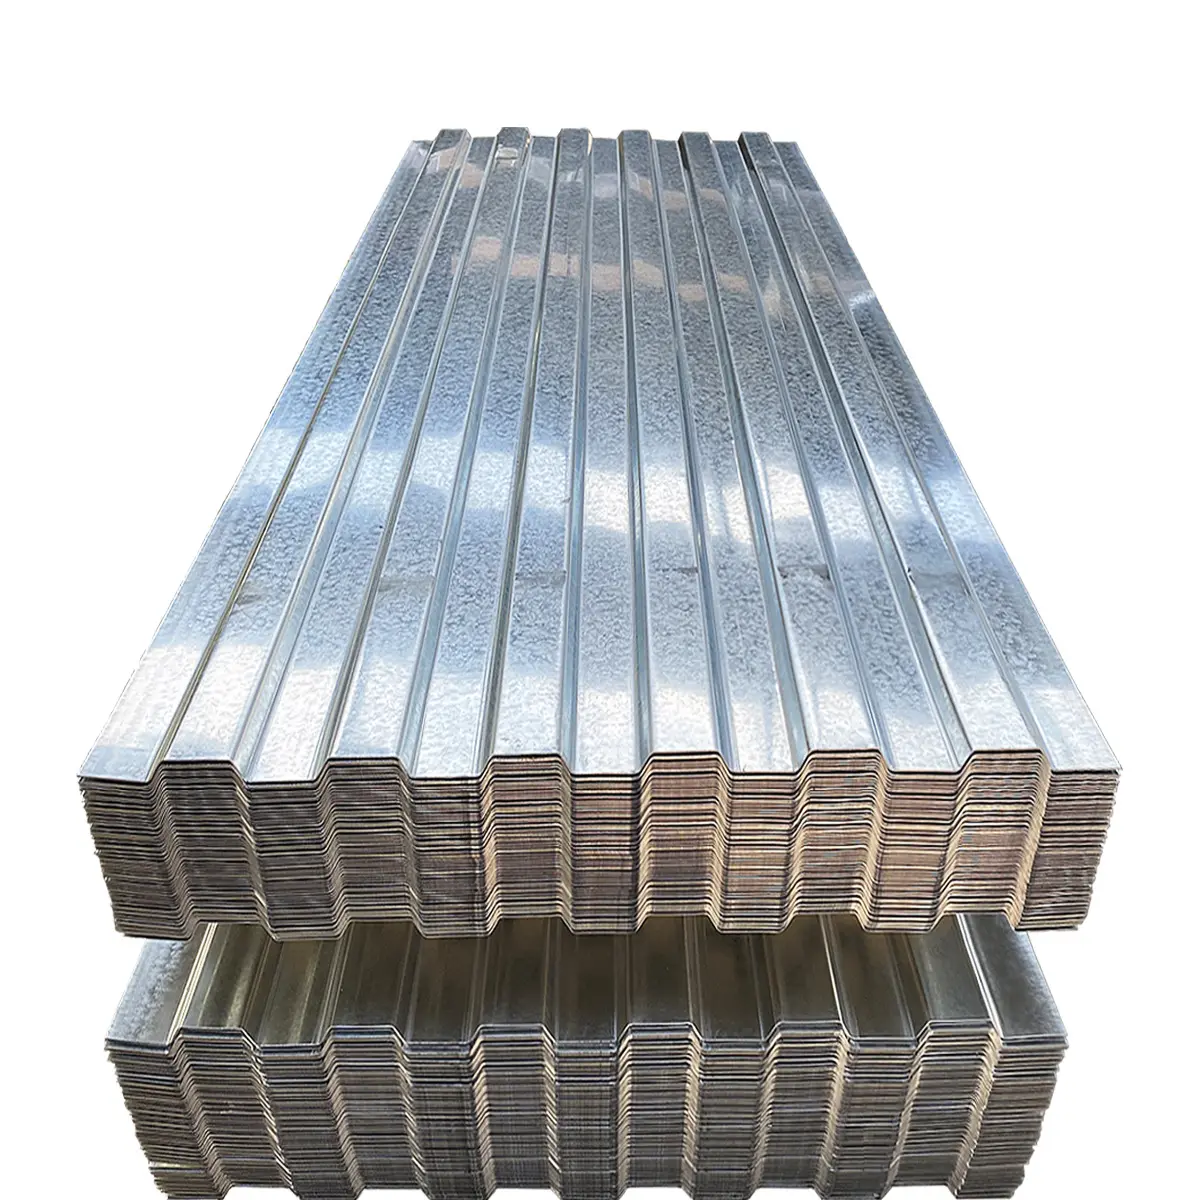 Prix tôle de toiture en zinc 4x8 tôle ondulée galvanisée plaques d'acier inoxydable en acier galvanisé 7 jours revêtues galvanisées